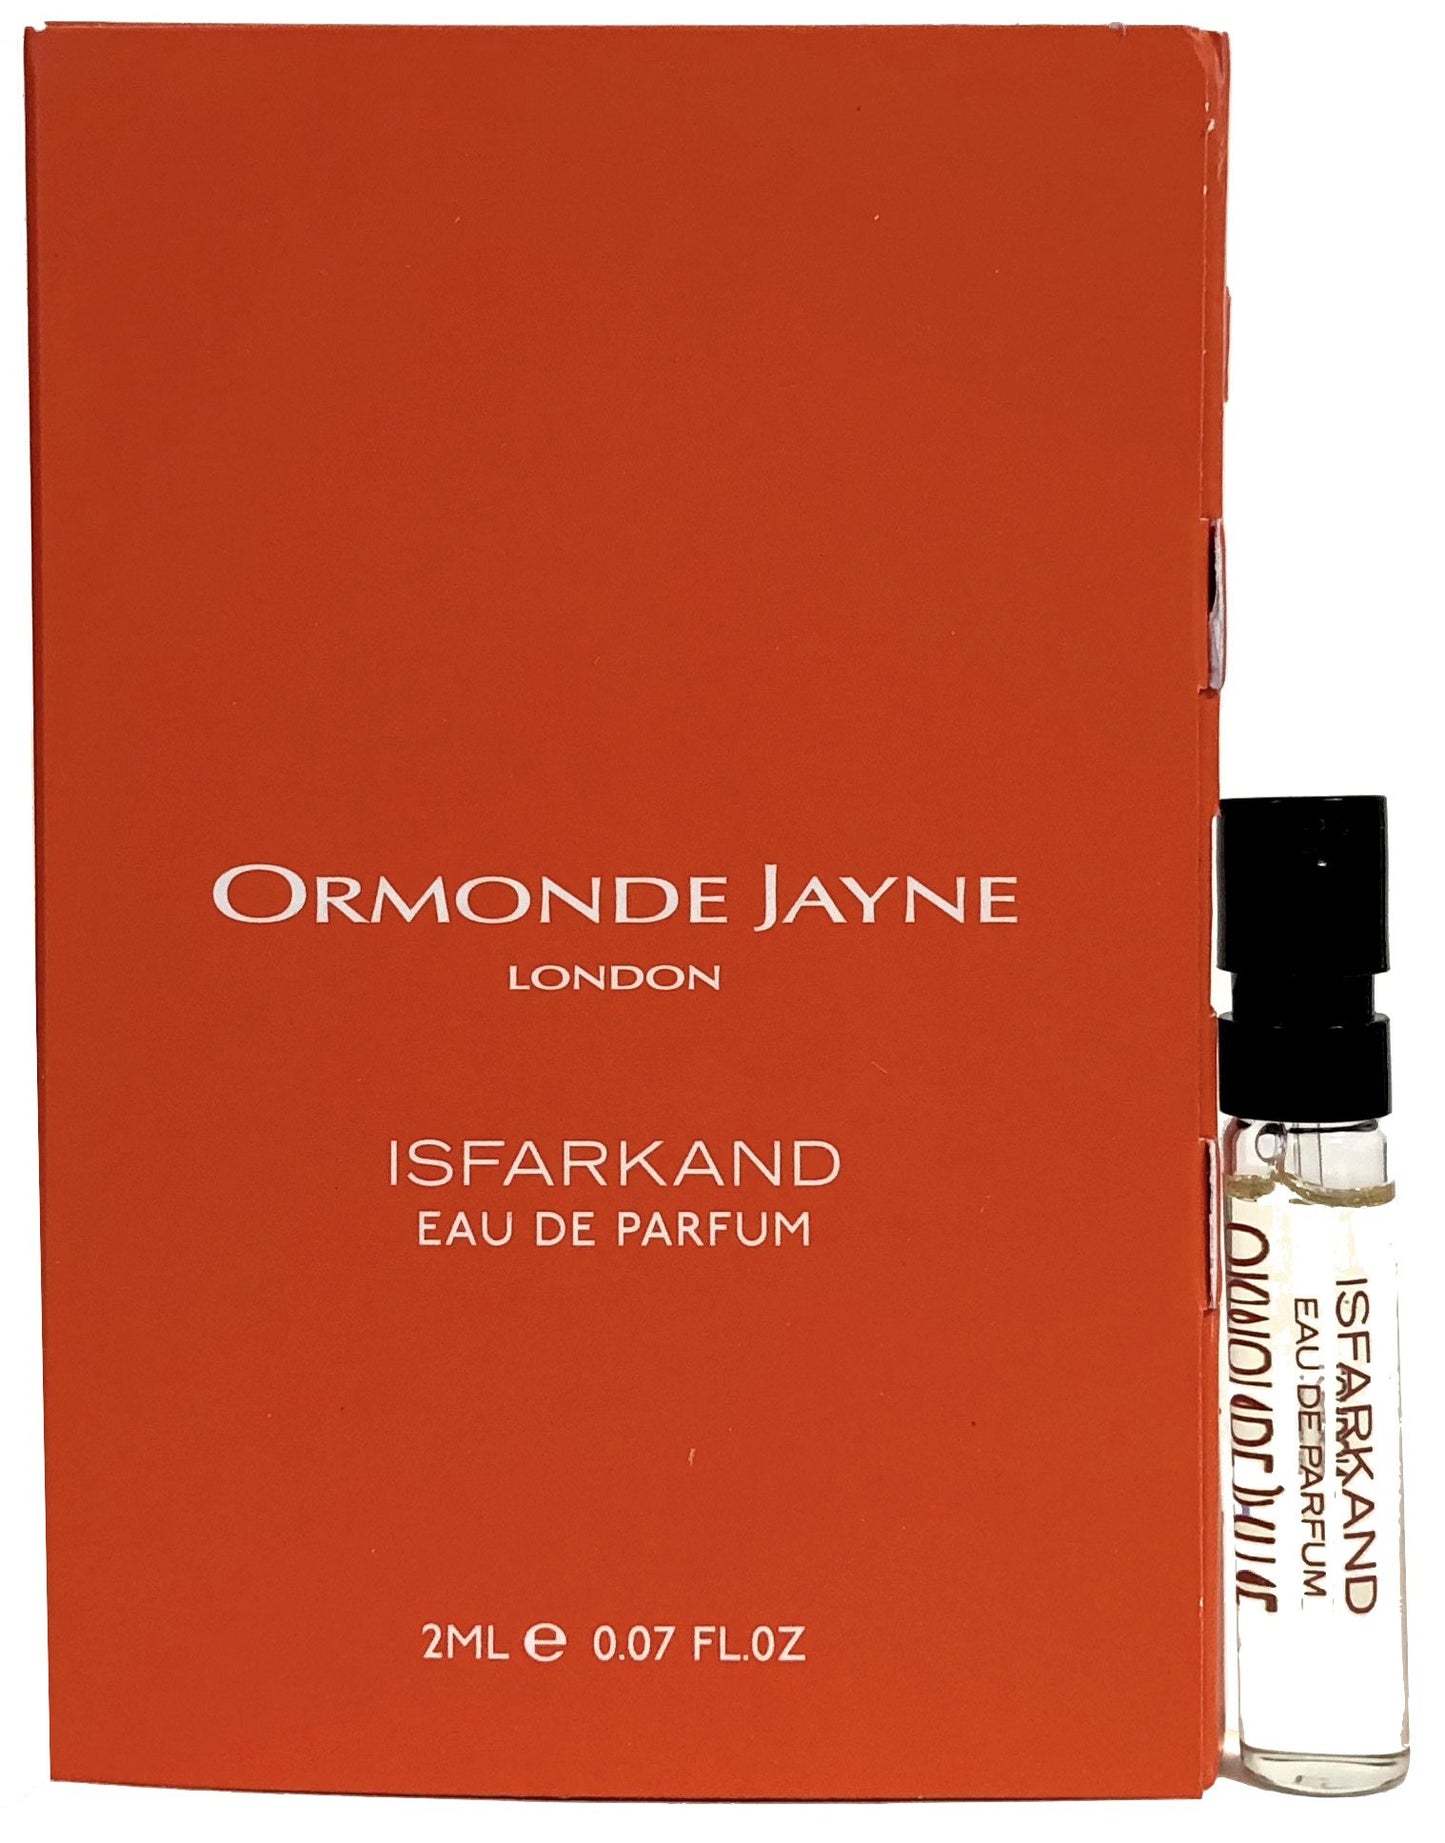 Ormonde Jayne Isfarkand 2ml resmi parfüm örnekleri